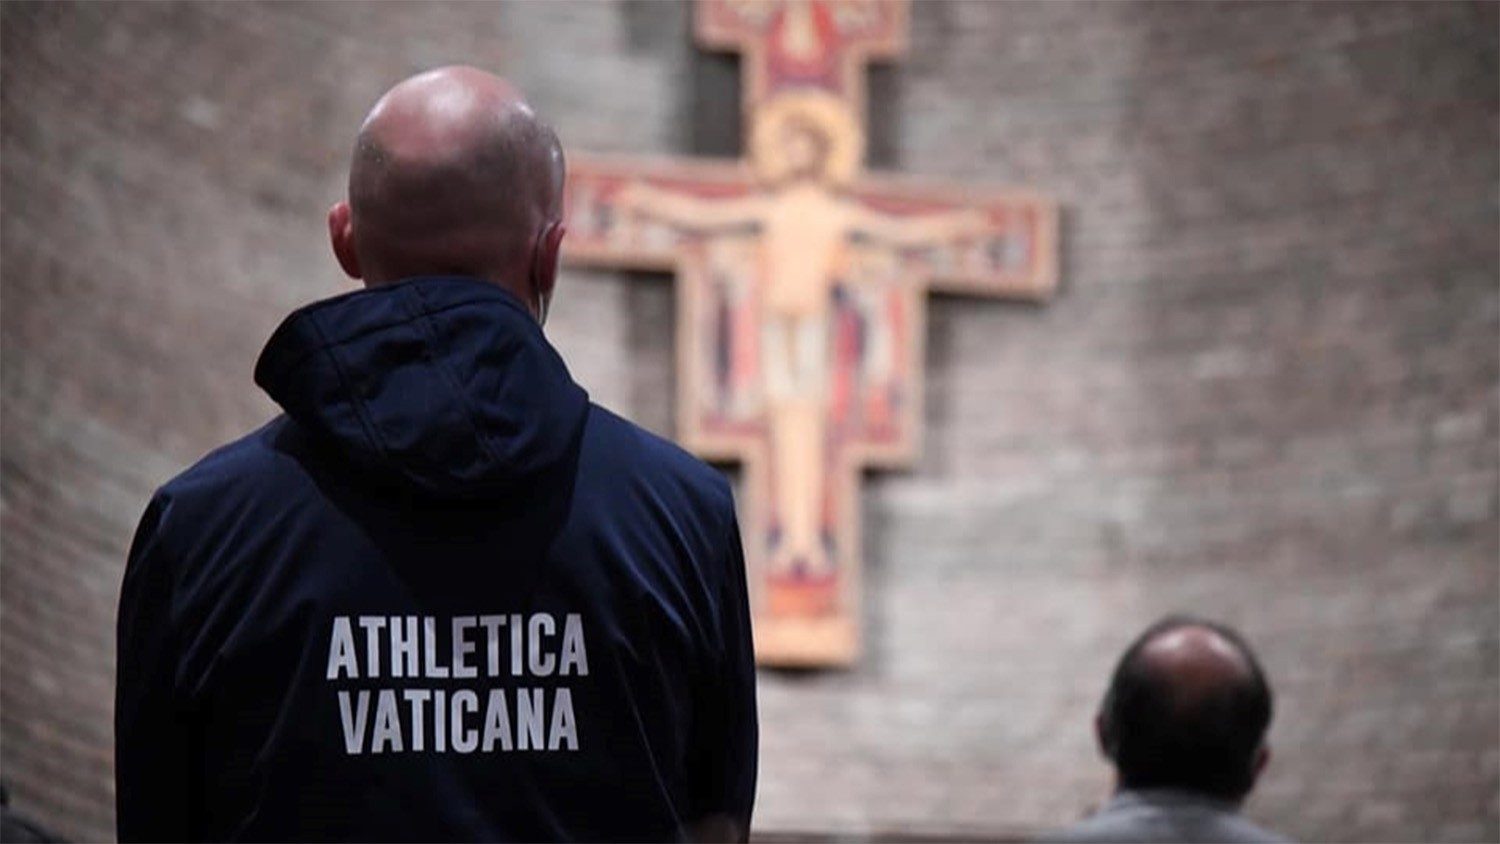 Ватиканский клуб вступил во Всемирную федерацию тхэквондо